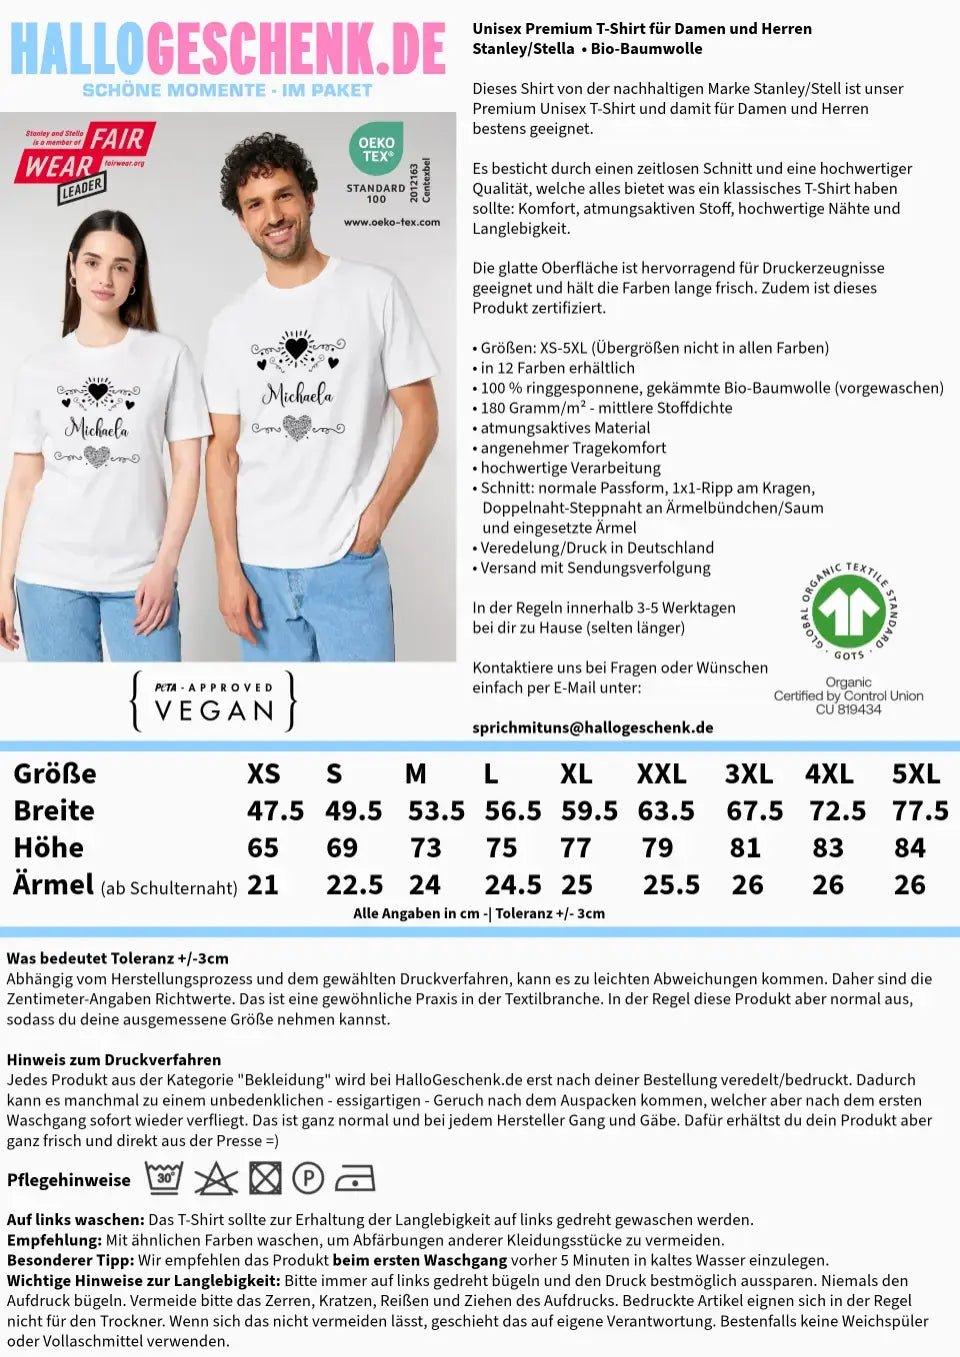 LOVE DESIGN 2 (personaliserbar) - Unisex Premium T - Shirt XS - 5XL aus Bio - Baumwolle für Damen & Herren - HalloGeschenk.de #geschenkideen# #personalisiert# #geschenk#